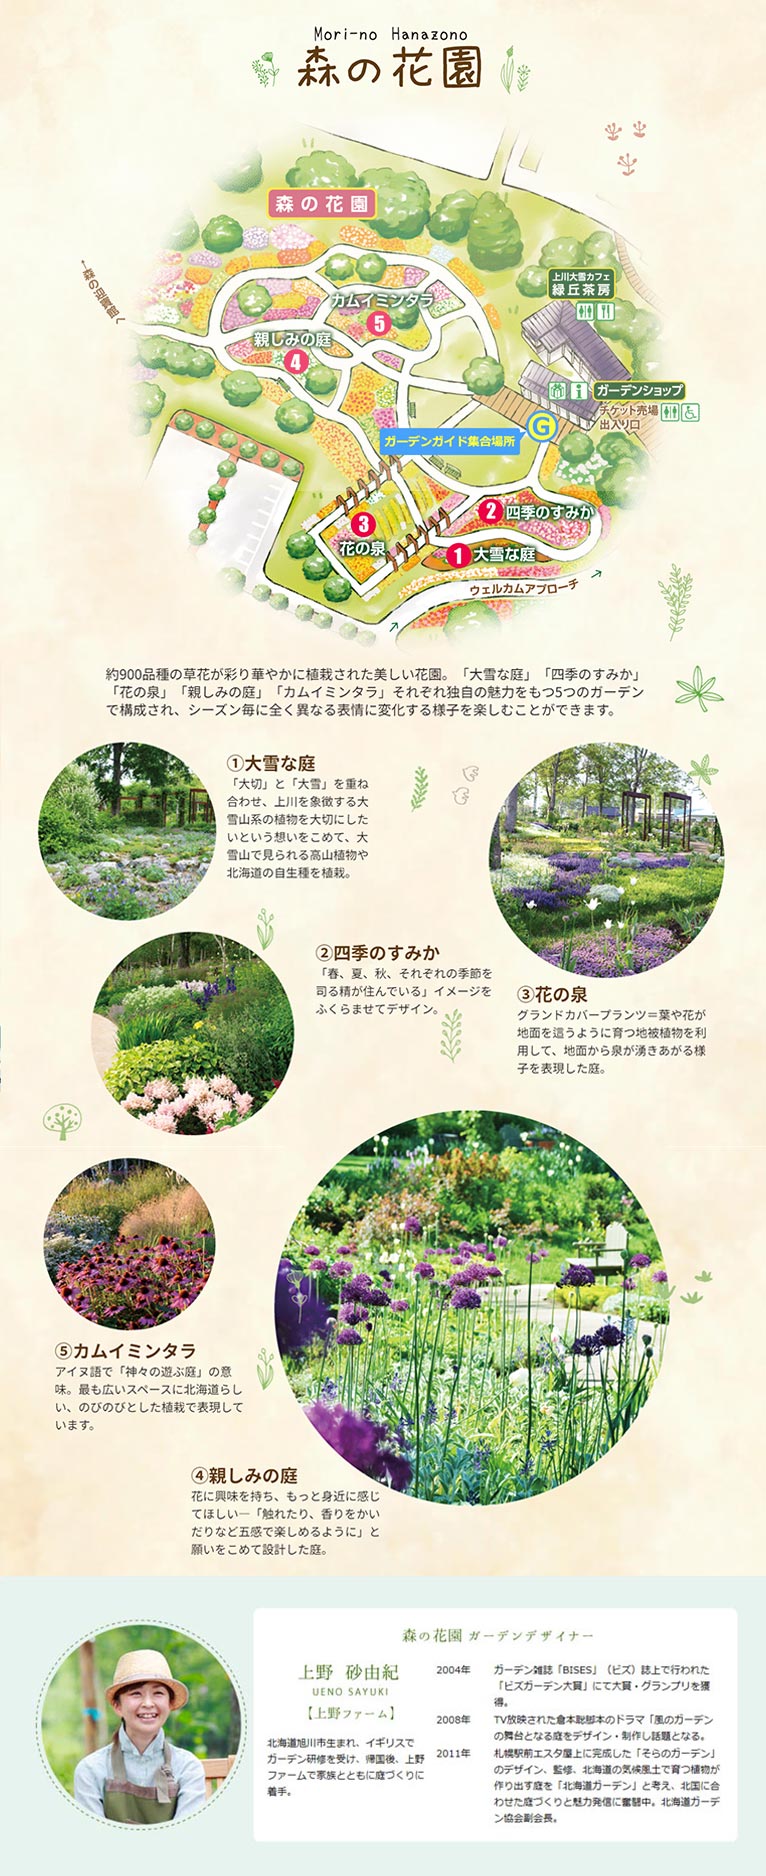 大雪森のガーデン紹介ページ　森の花園ガーデンデザイナー上野砂由紀氏